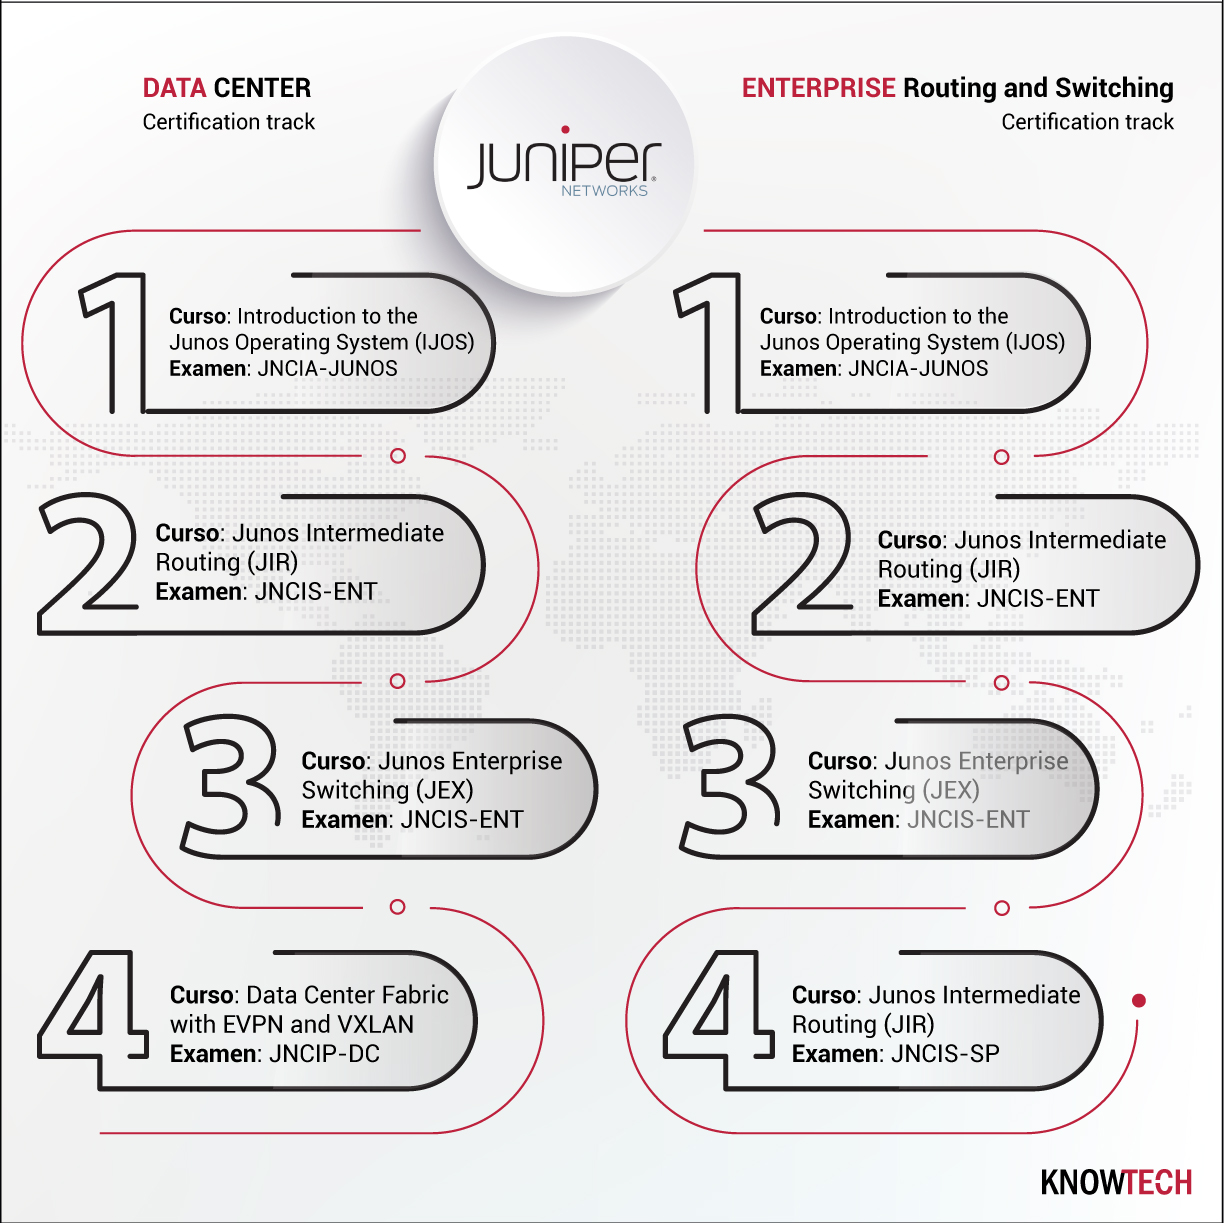 Ya están disponibles los tracks de certificación Data Center y Enterprise Routing and Switching de JUNIPER Networks.